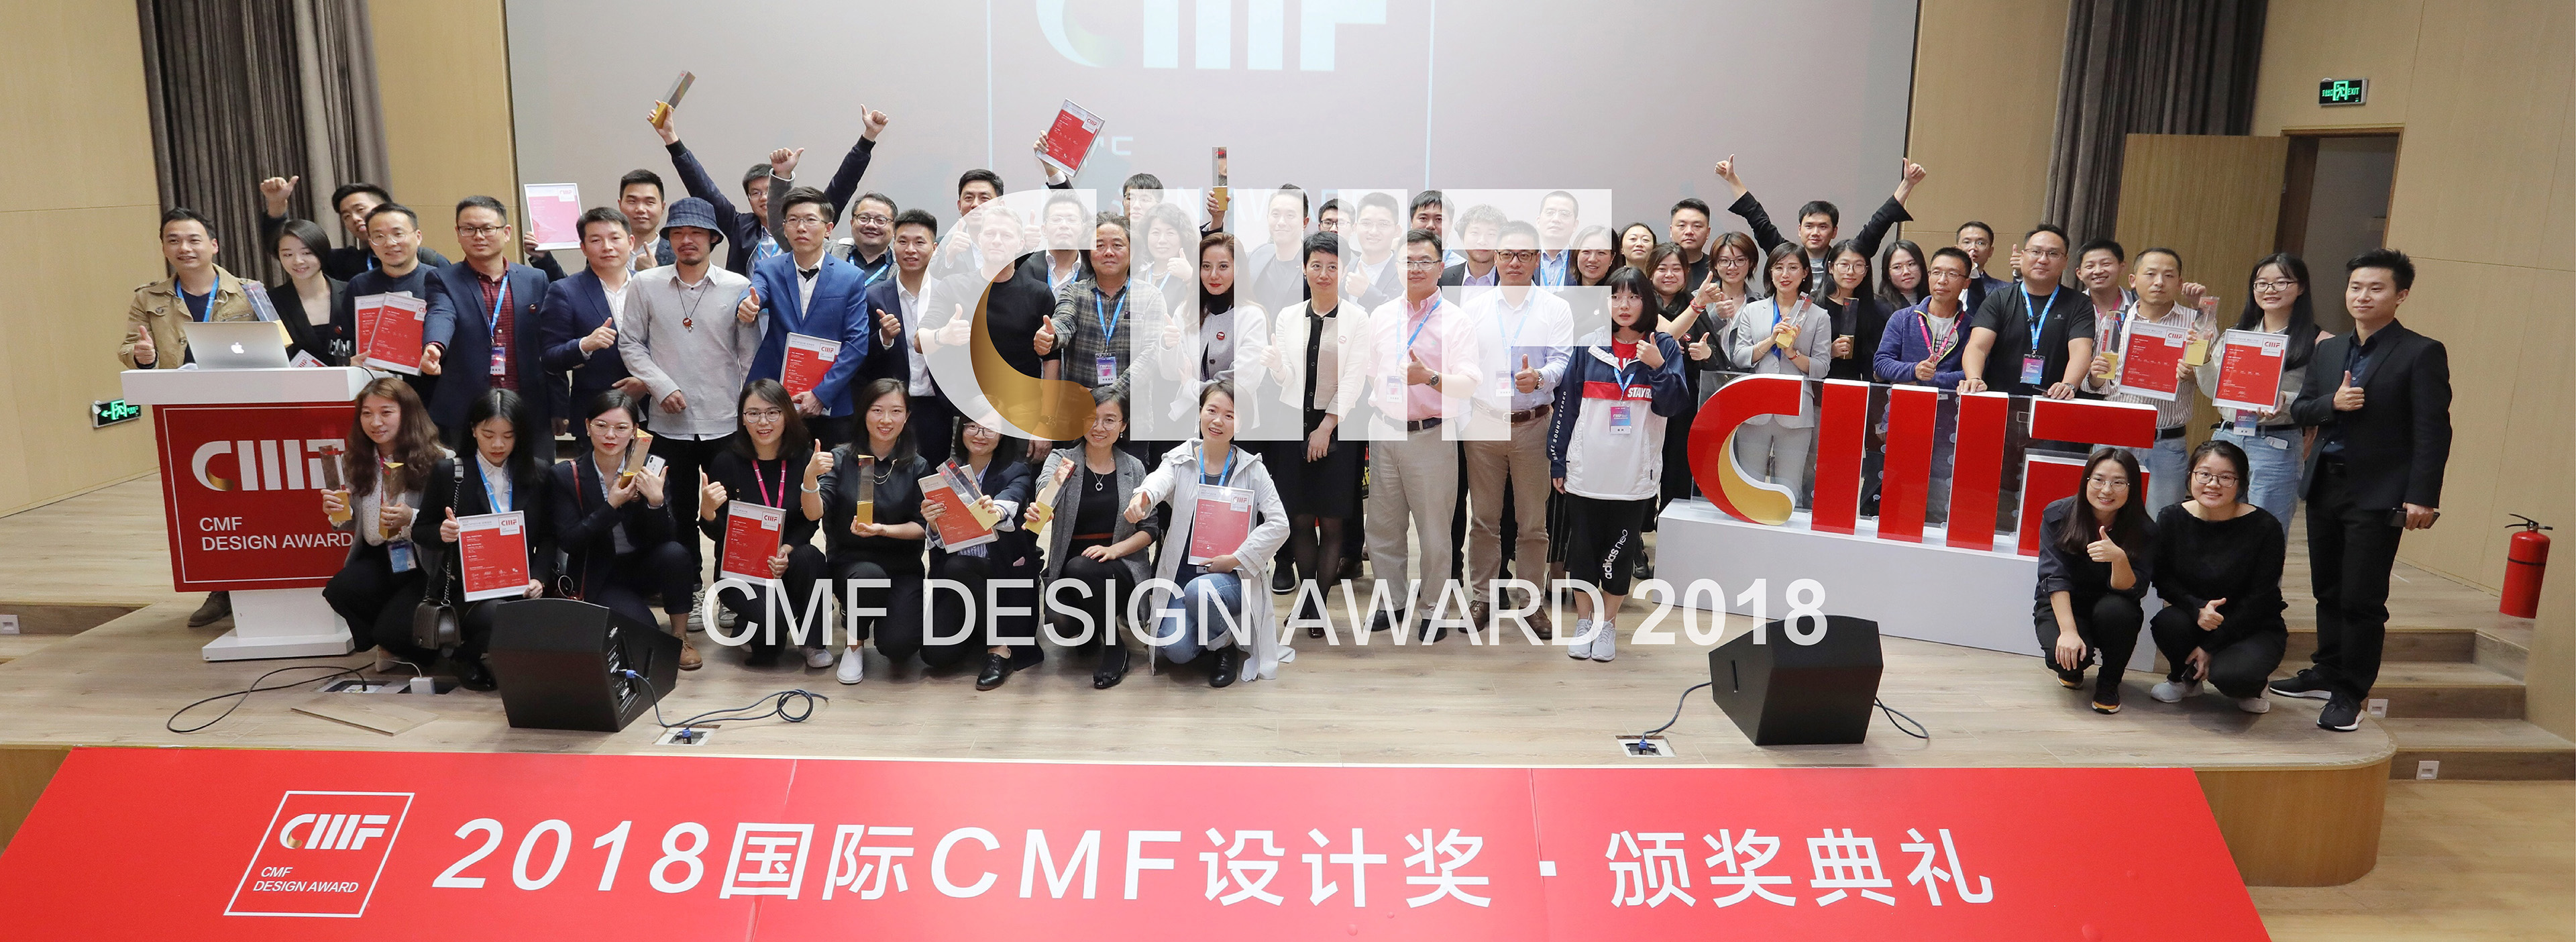 2018 国际CMF设计奖.颁奖典礼